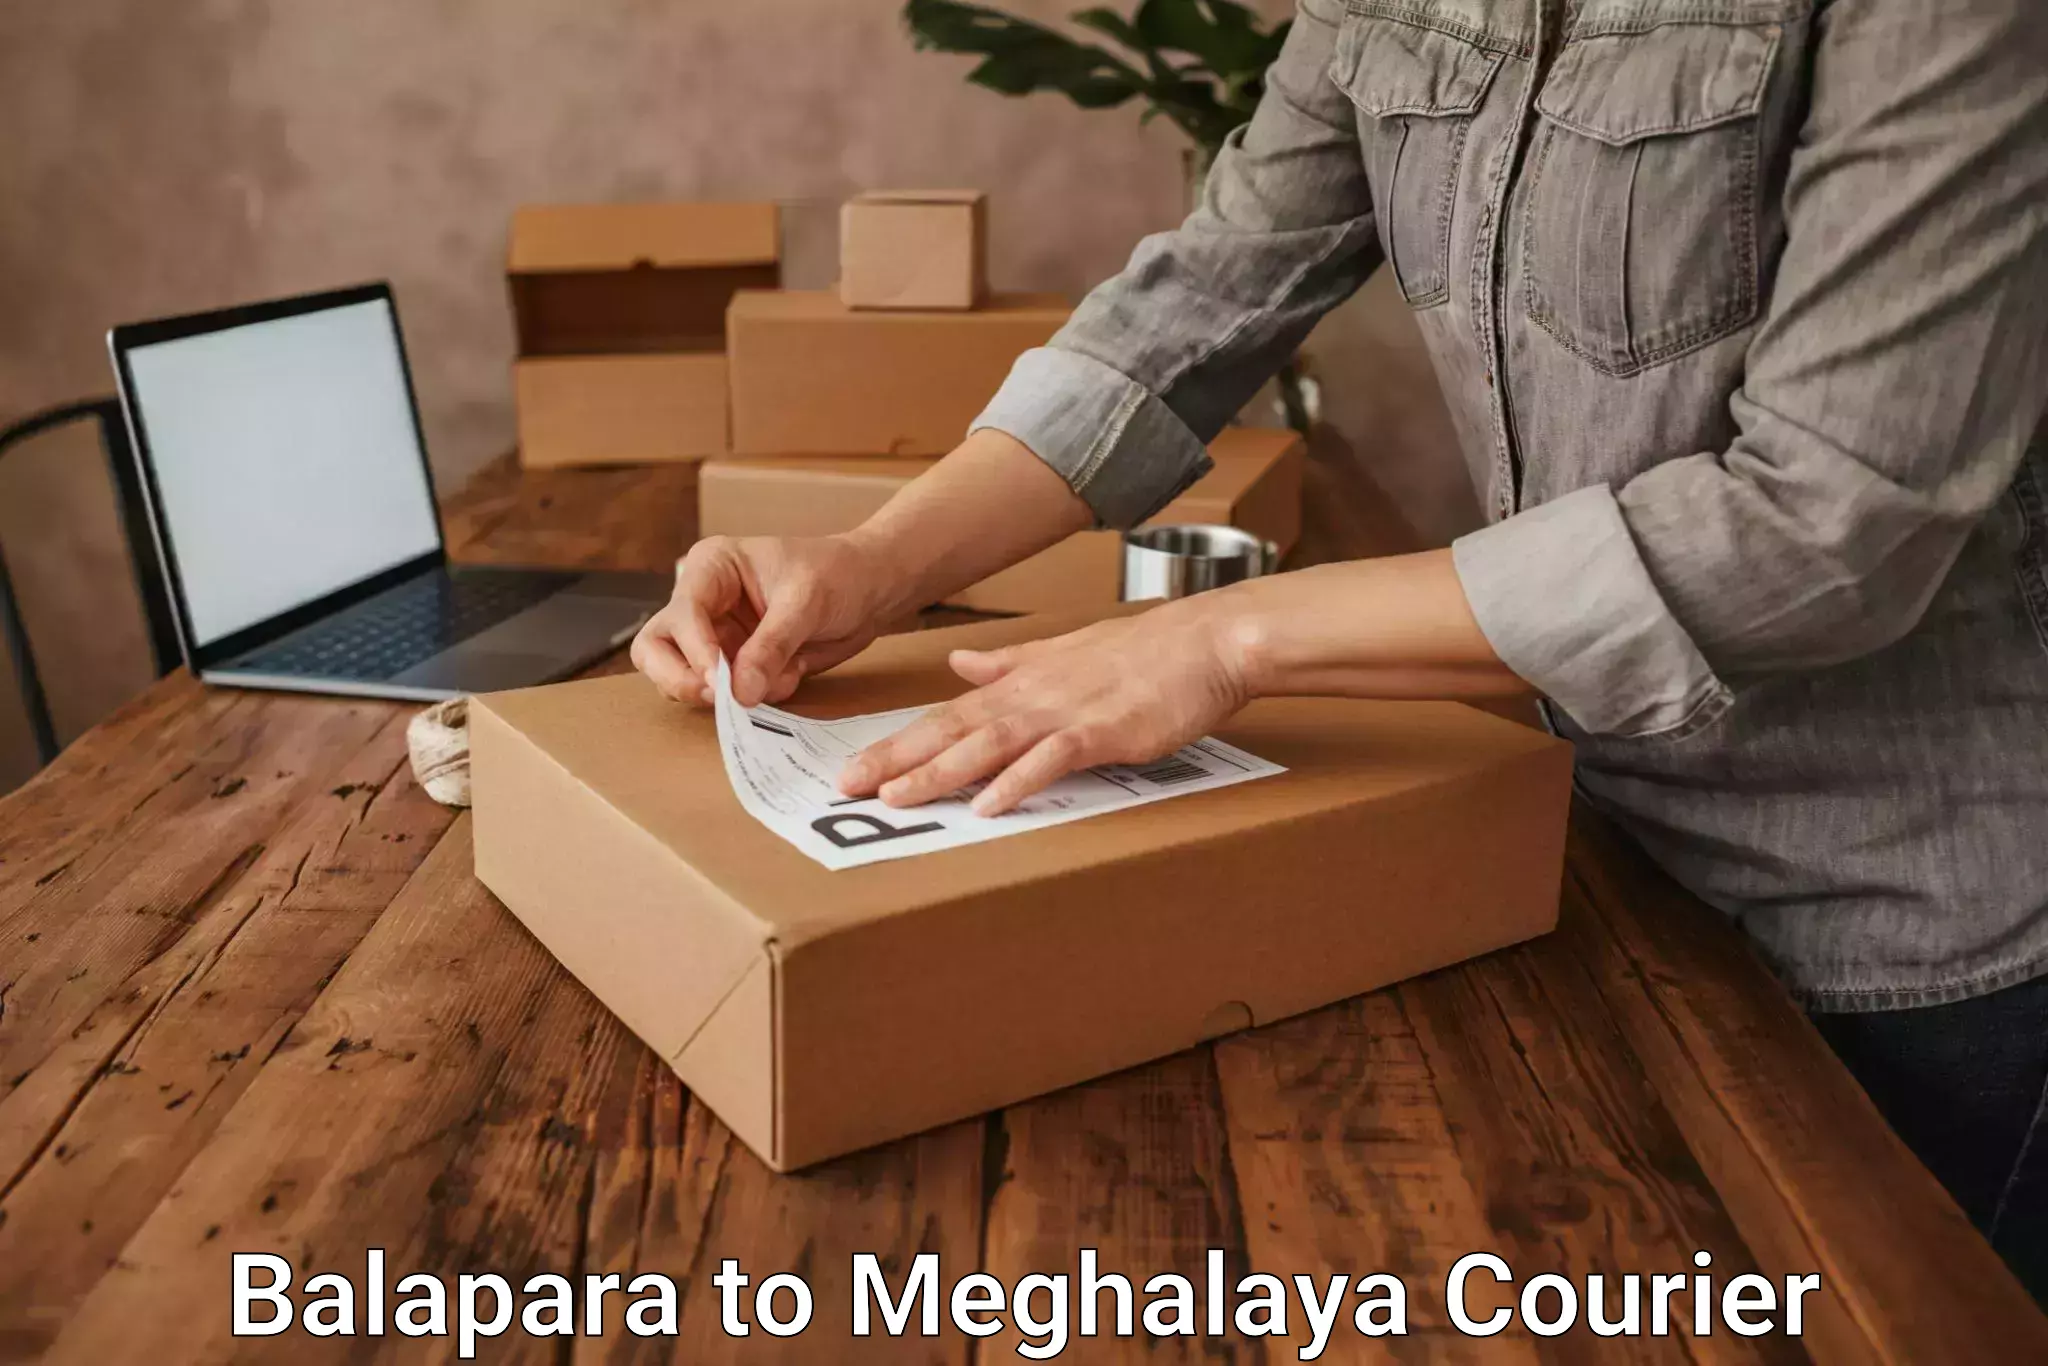 Modern courier technology Balapara to NIT Meghalaya